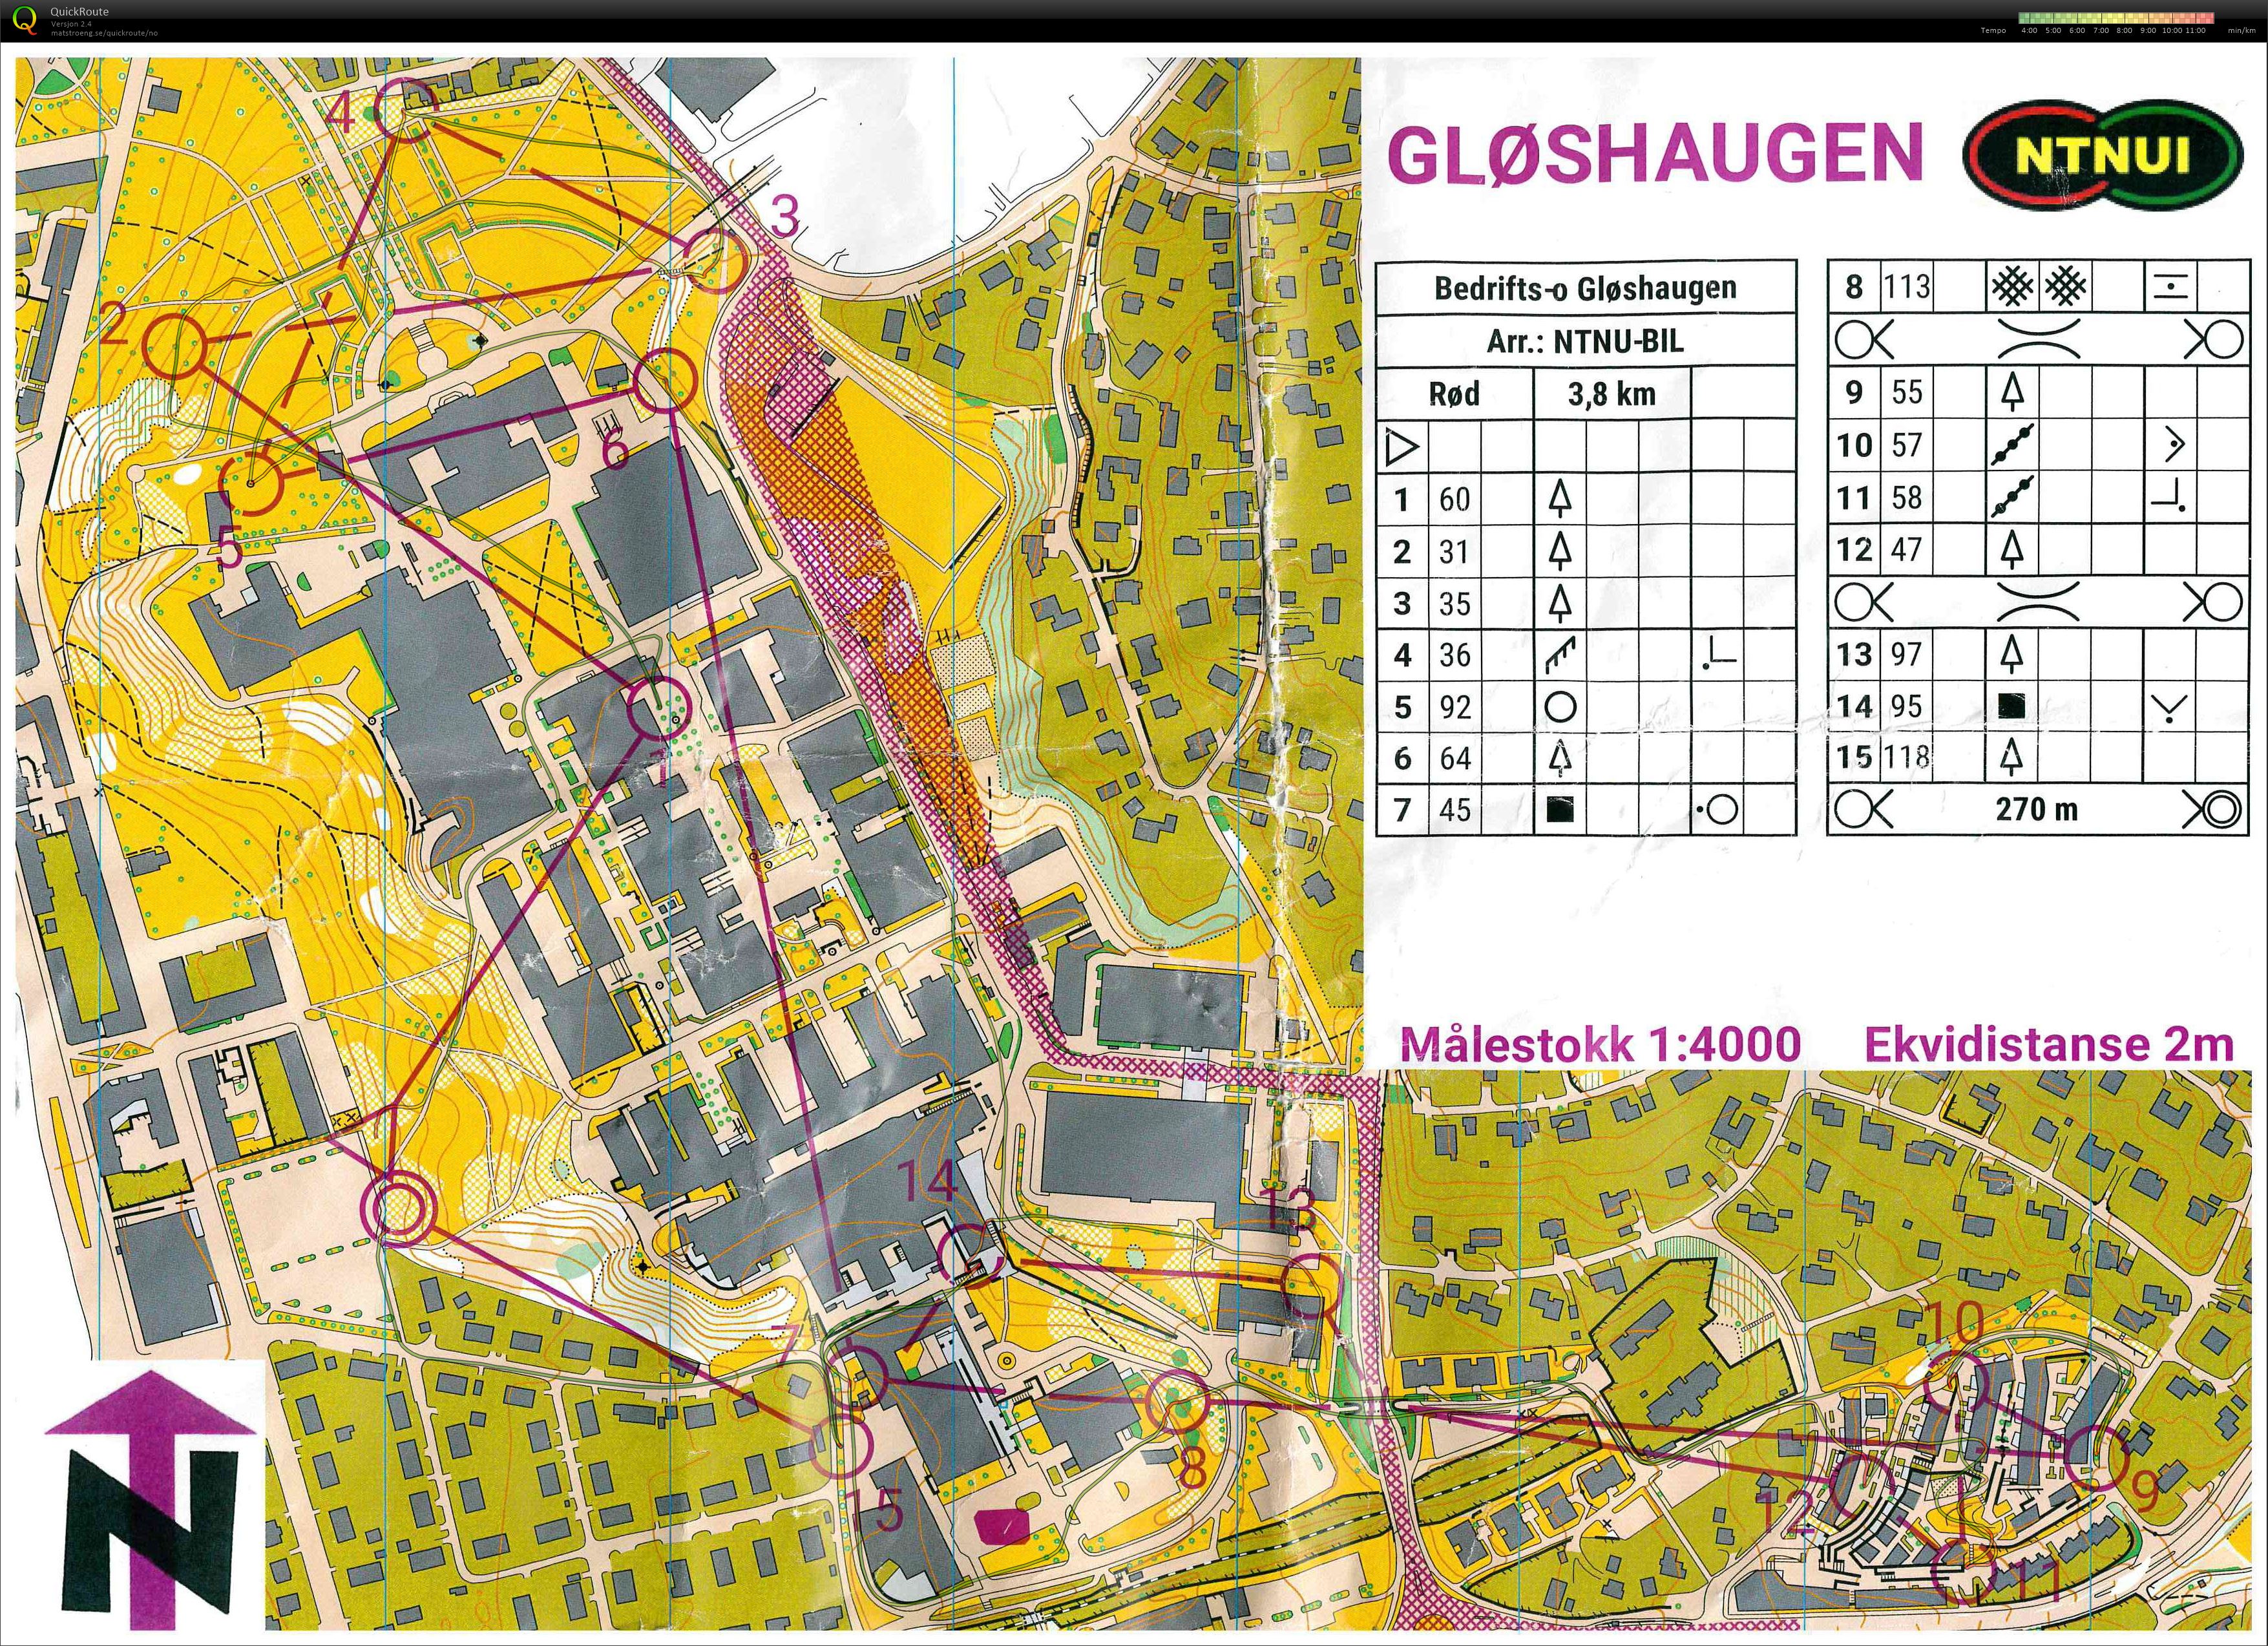 Bedrifts-o-løp, sprint, Gløshaugen (2021-05-18)